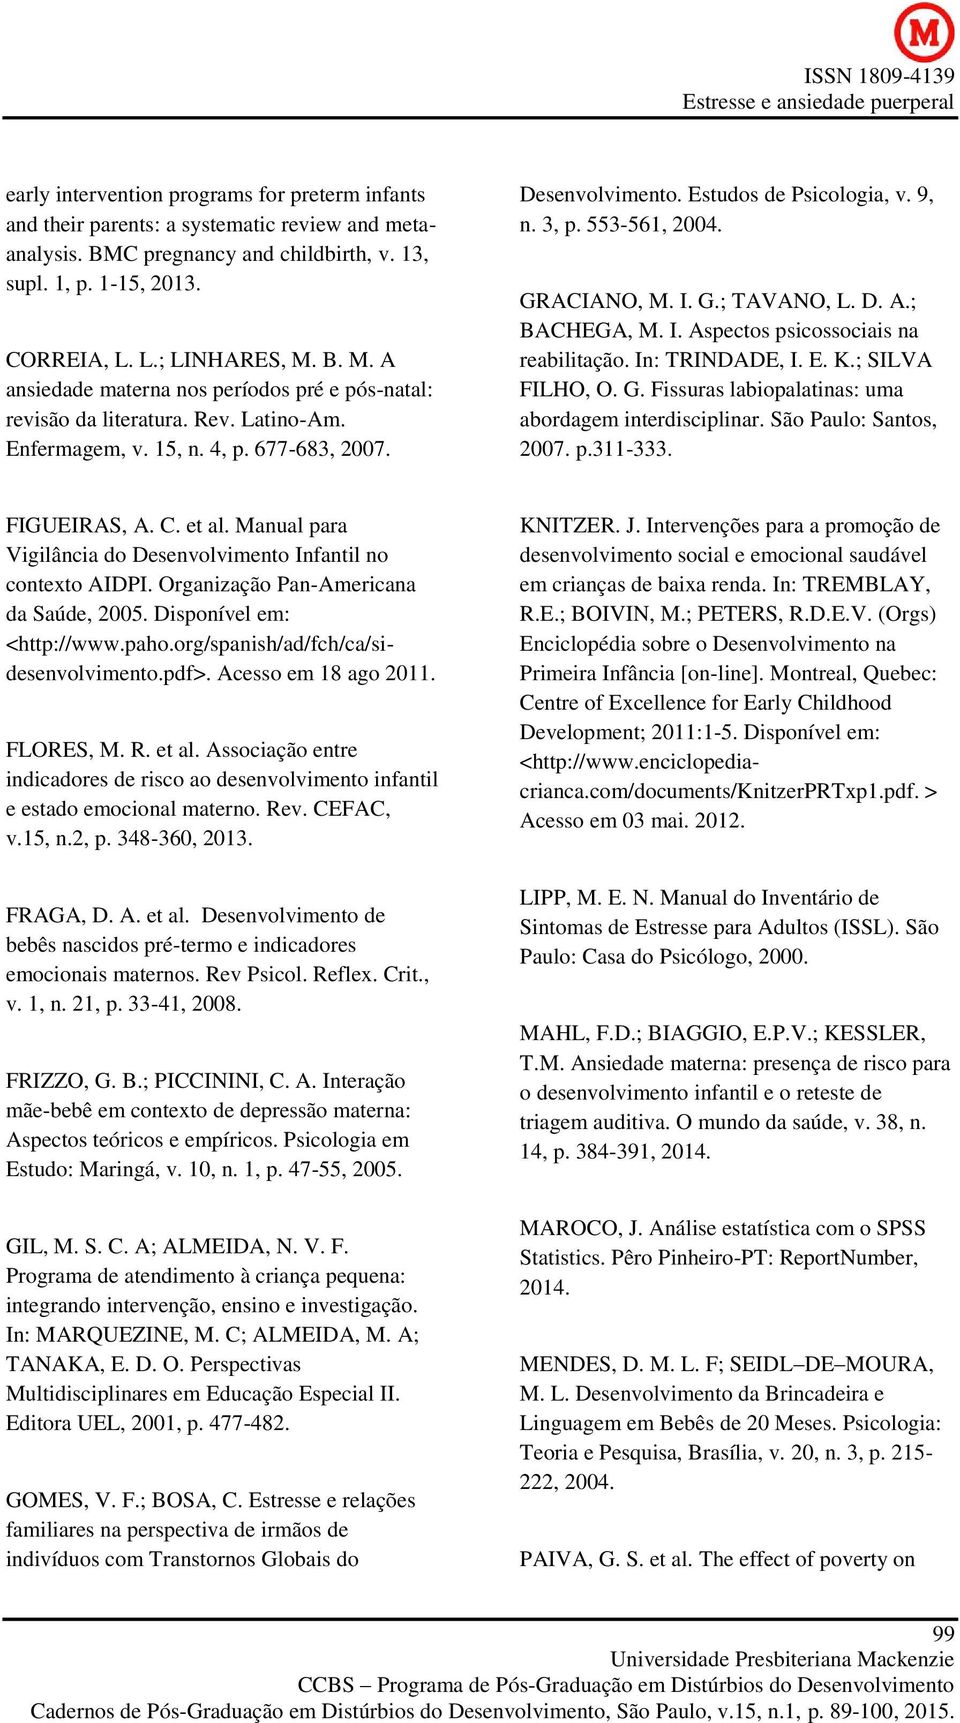 553-561, 2004. GRACIANO, M. I. G.; TAVANO, L. D. A.; BACHEGA, M. I. Aspectos psicossociais na reabilitação. In: TRINDADE, I. E. K.; SILVA FILHO, O. G. Fissuras labiopalatinas: uma abordagem interdisciplinar.